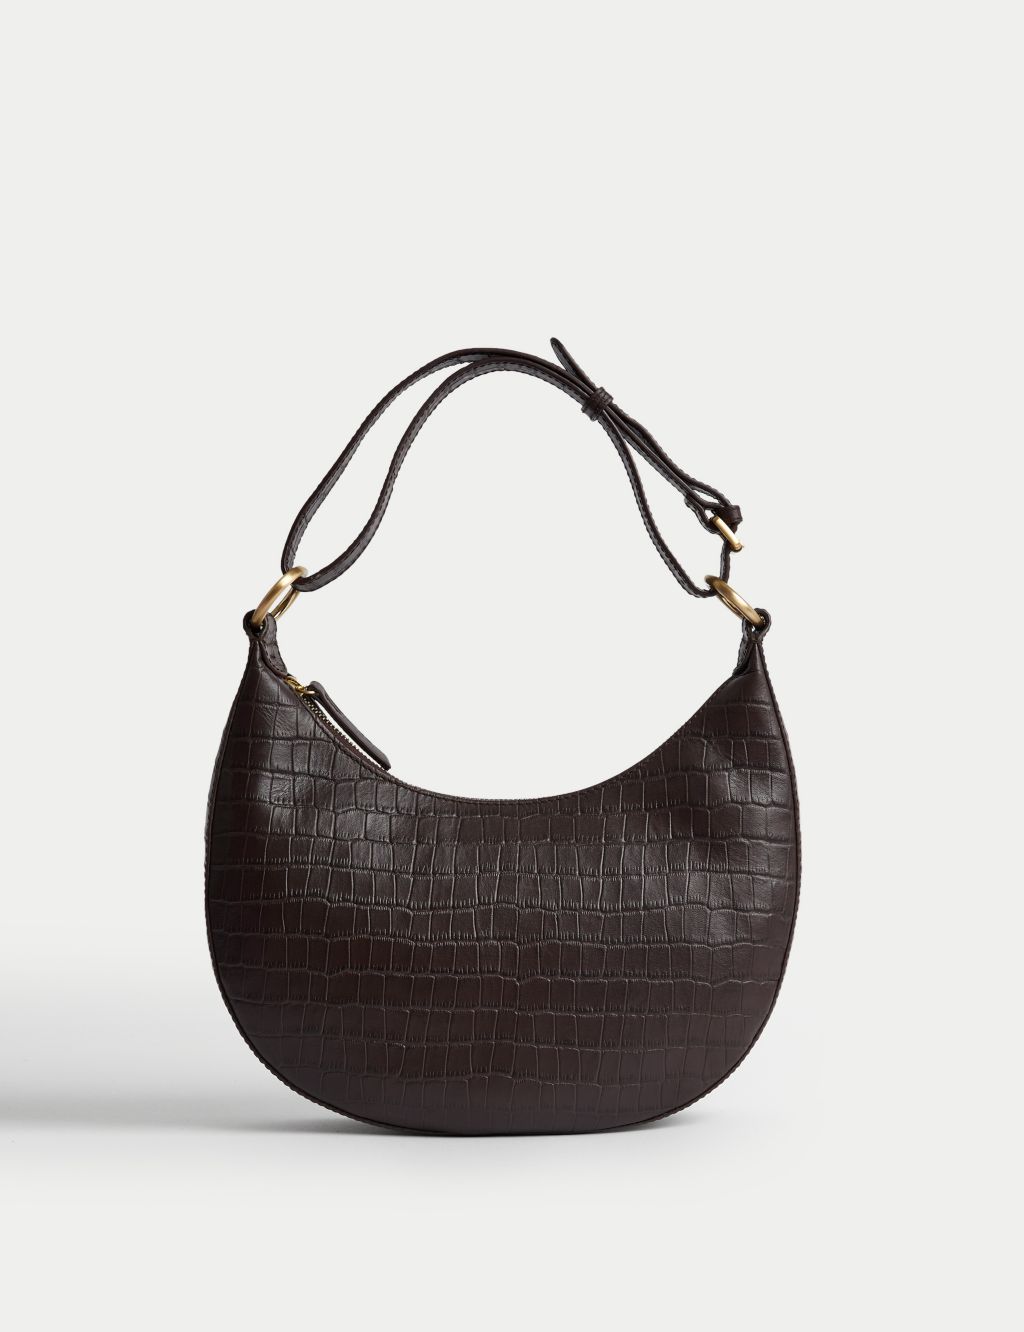 Leather Croc Effect Shoulder Bag image 1